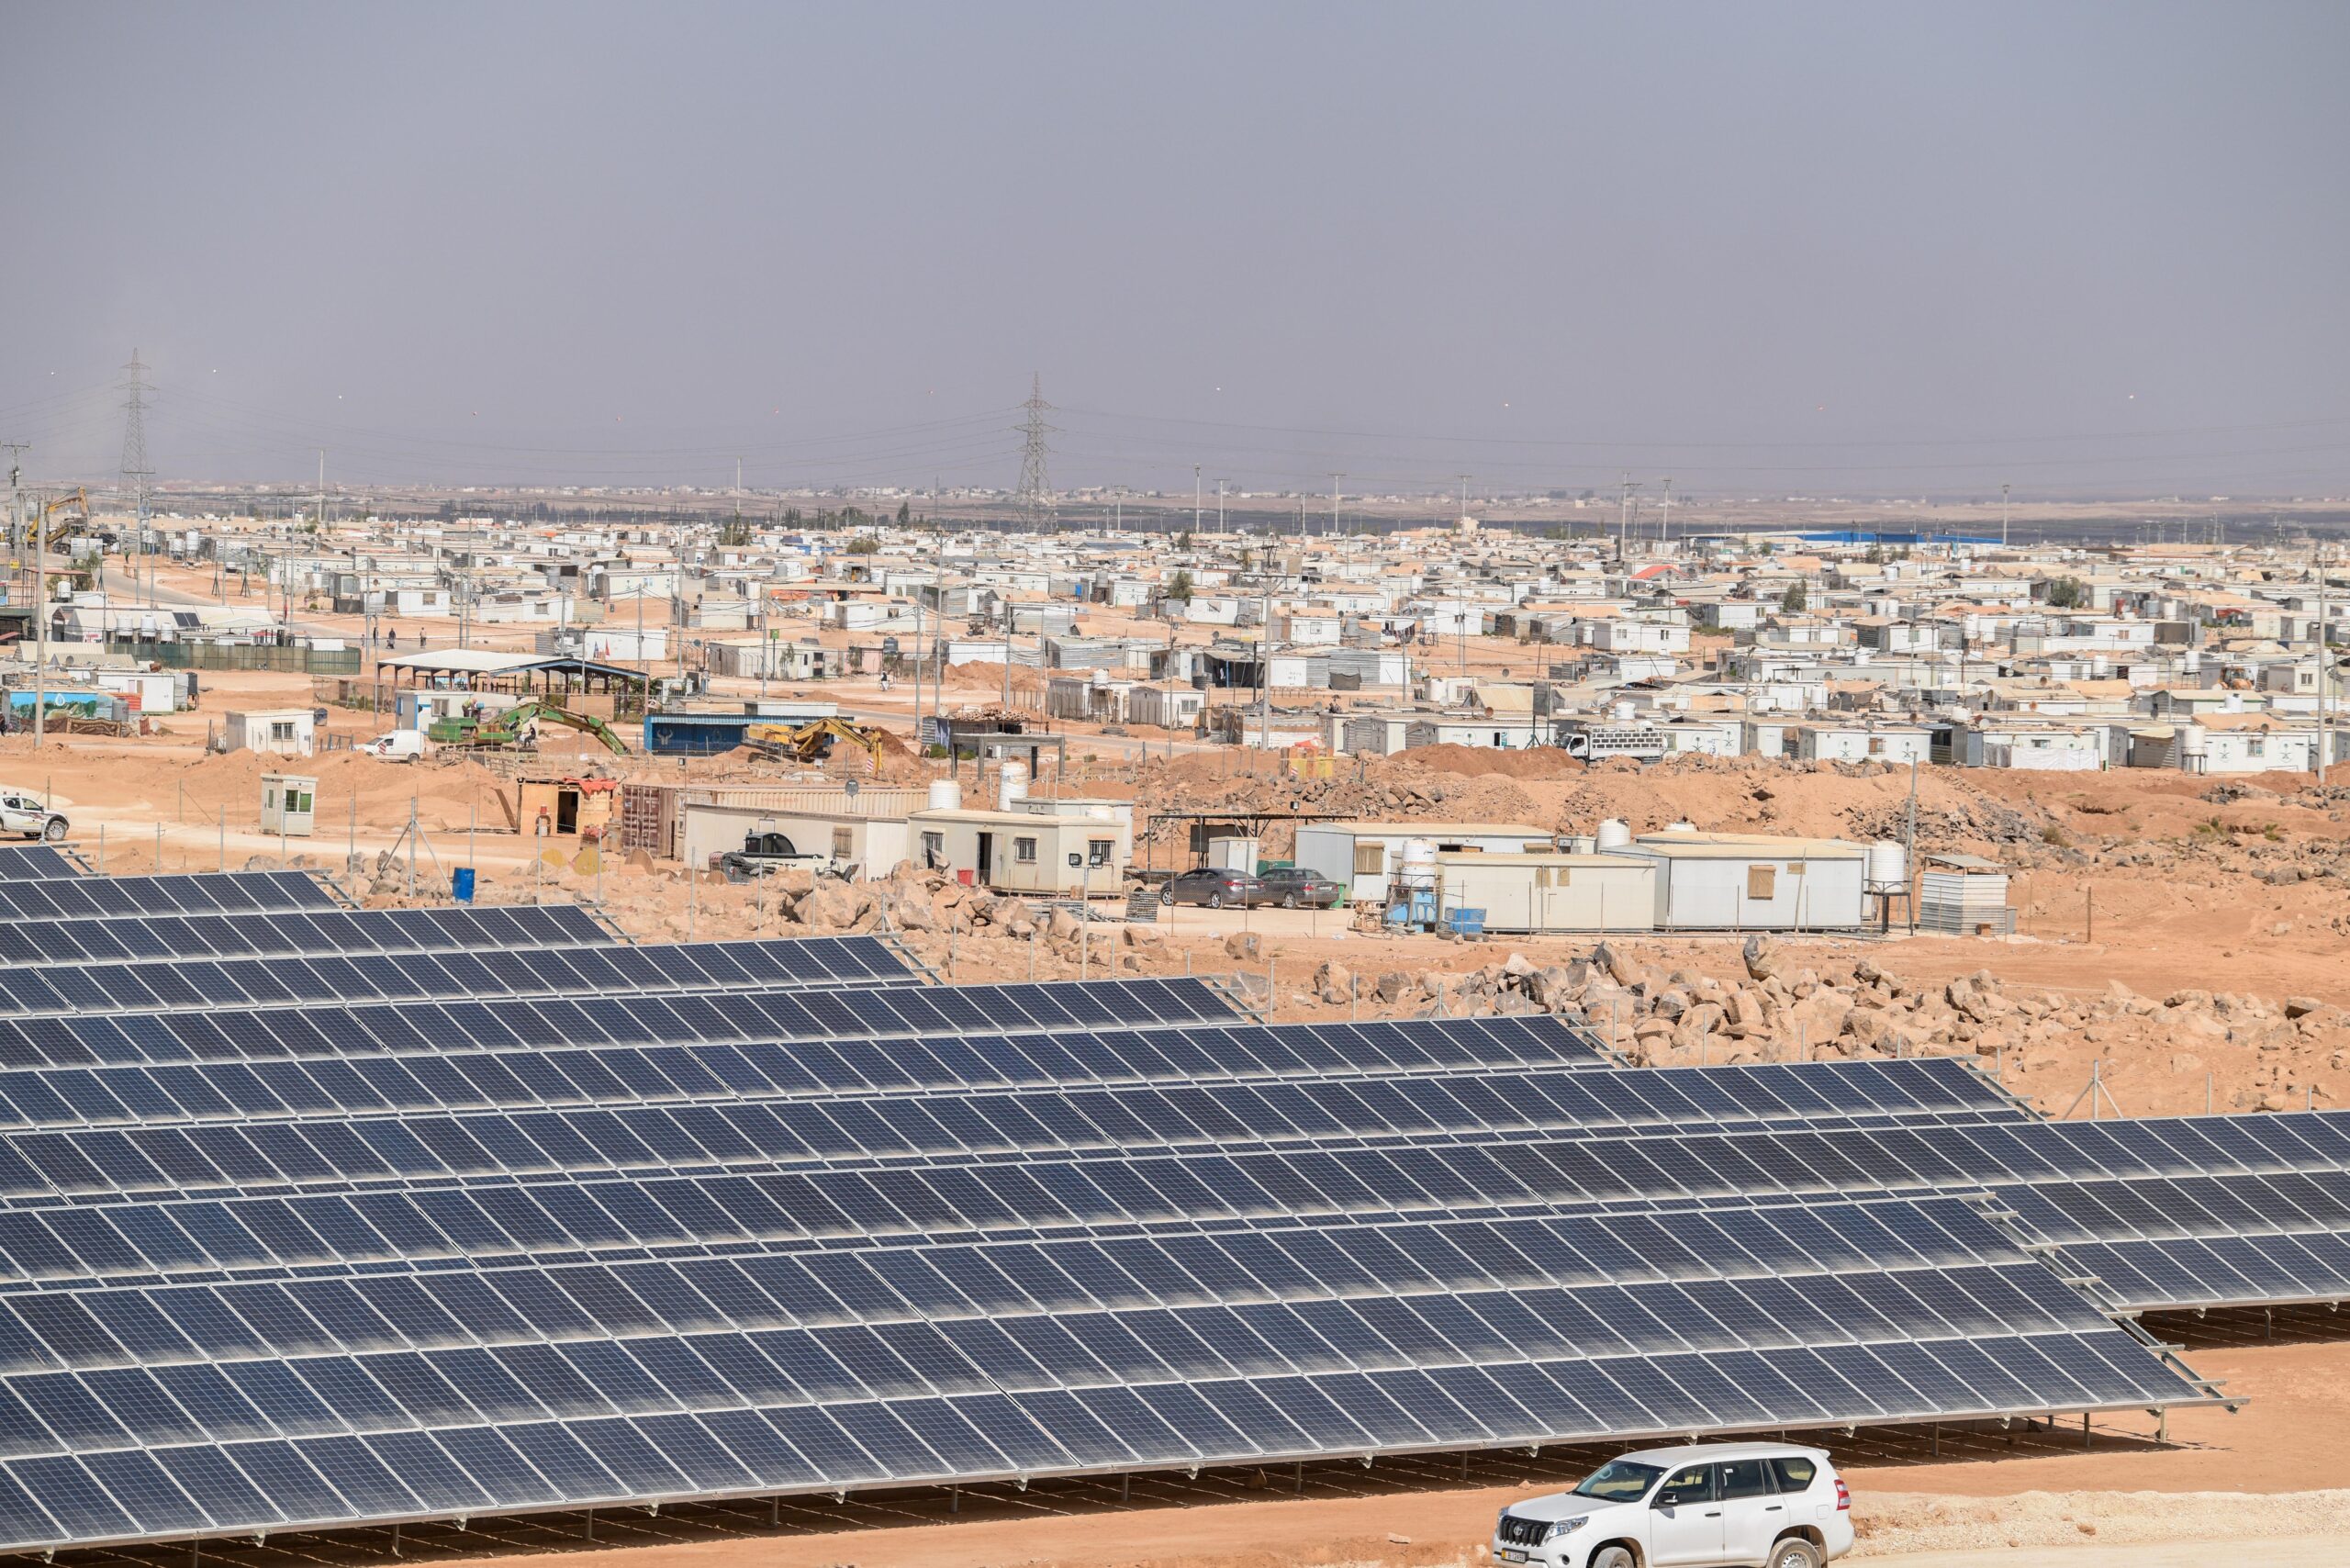 Deze elektriciteitscentrale op zonne-energie is de grootste die ooit gebouwd werd in een vluchtelingenkamp. Het levert groene energie aan het kamp. © UNHCR/Mohammad Hawari